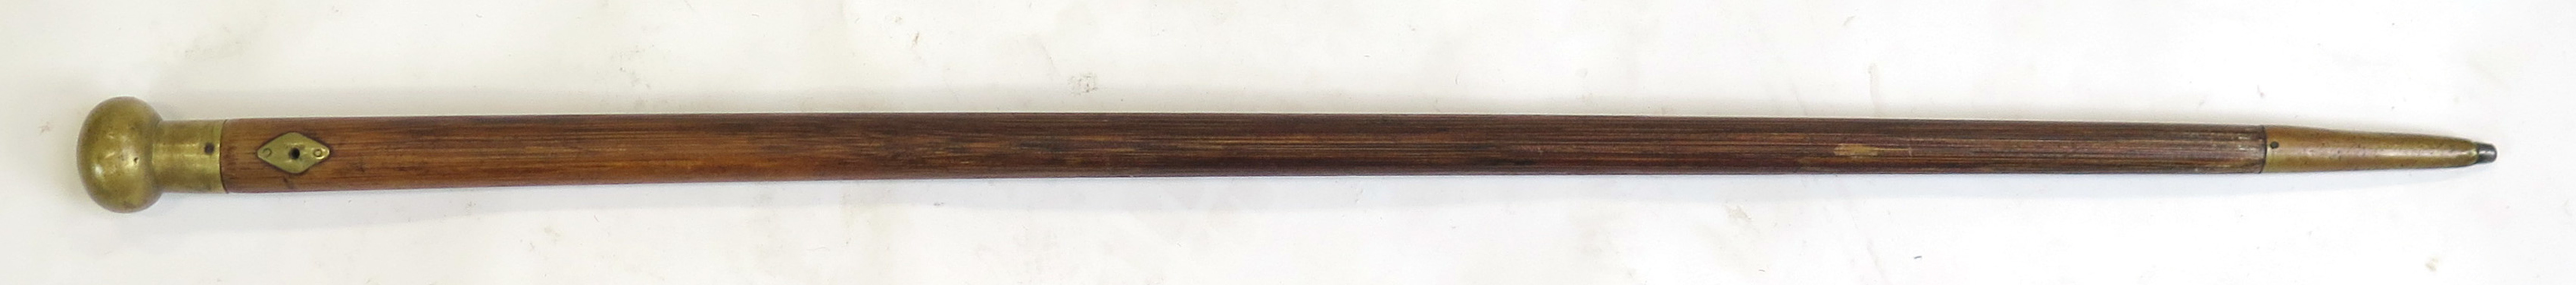 Käpp, trä med mässingbeslag, 1800-talets mitt, _9811a_lg.jpeg